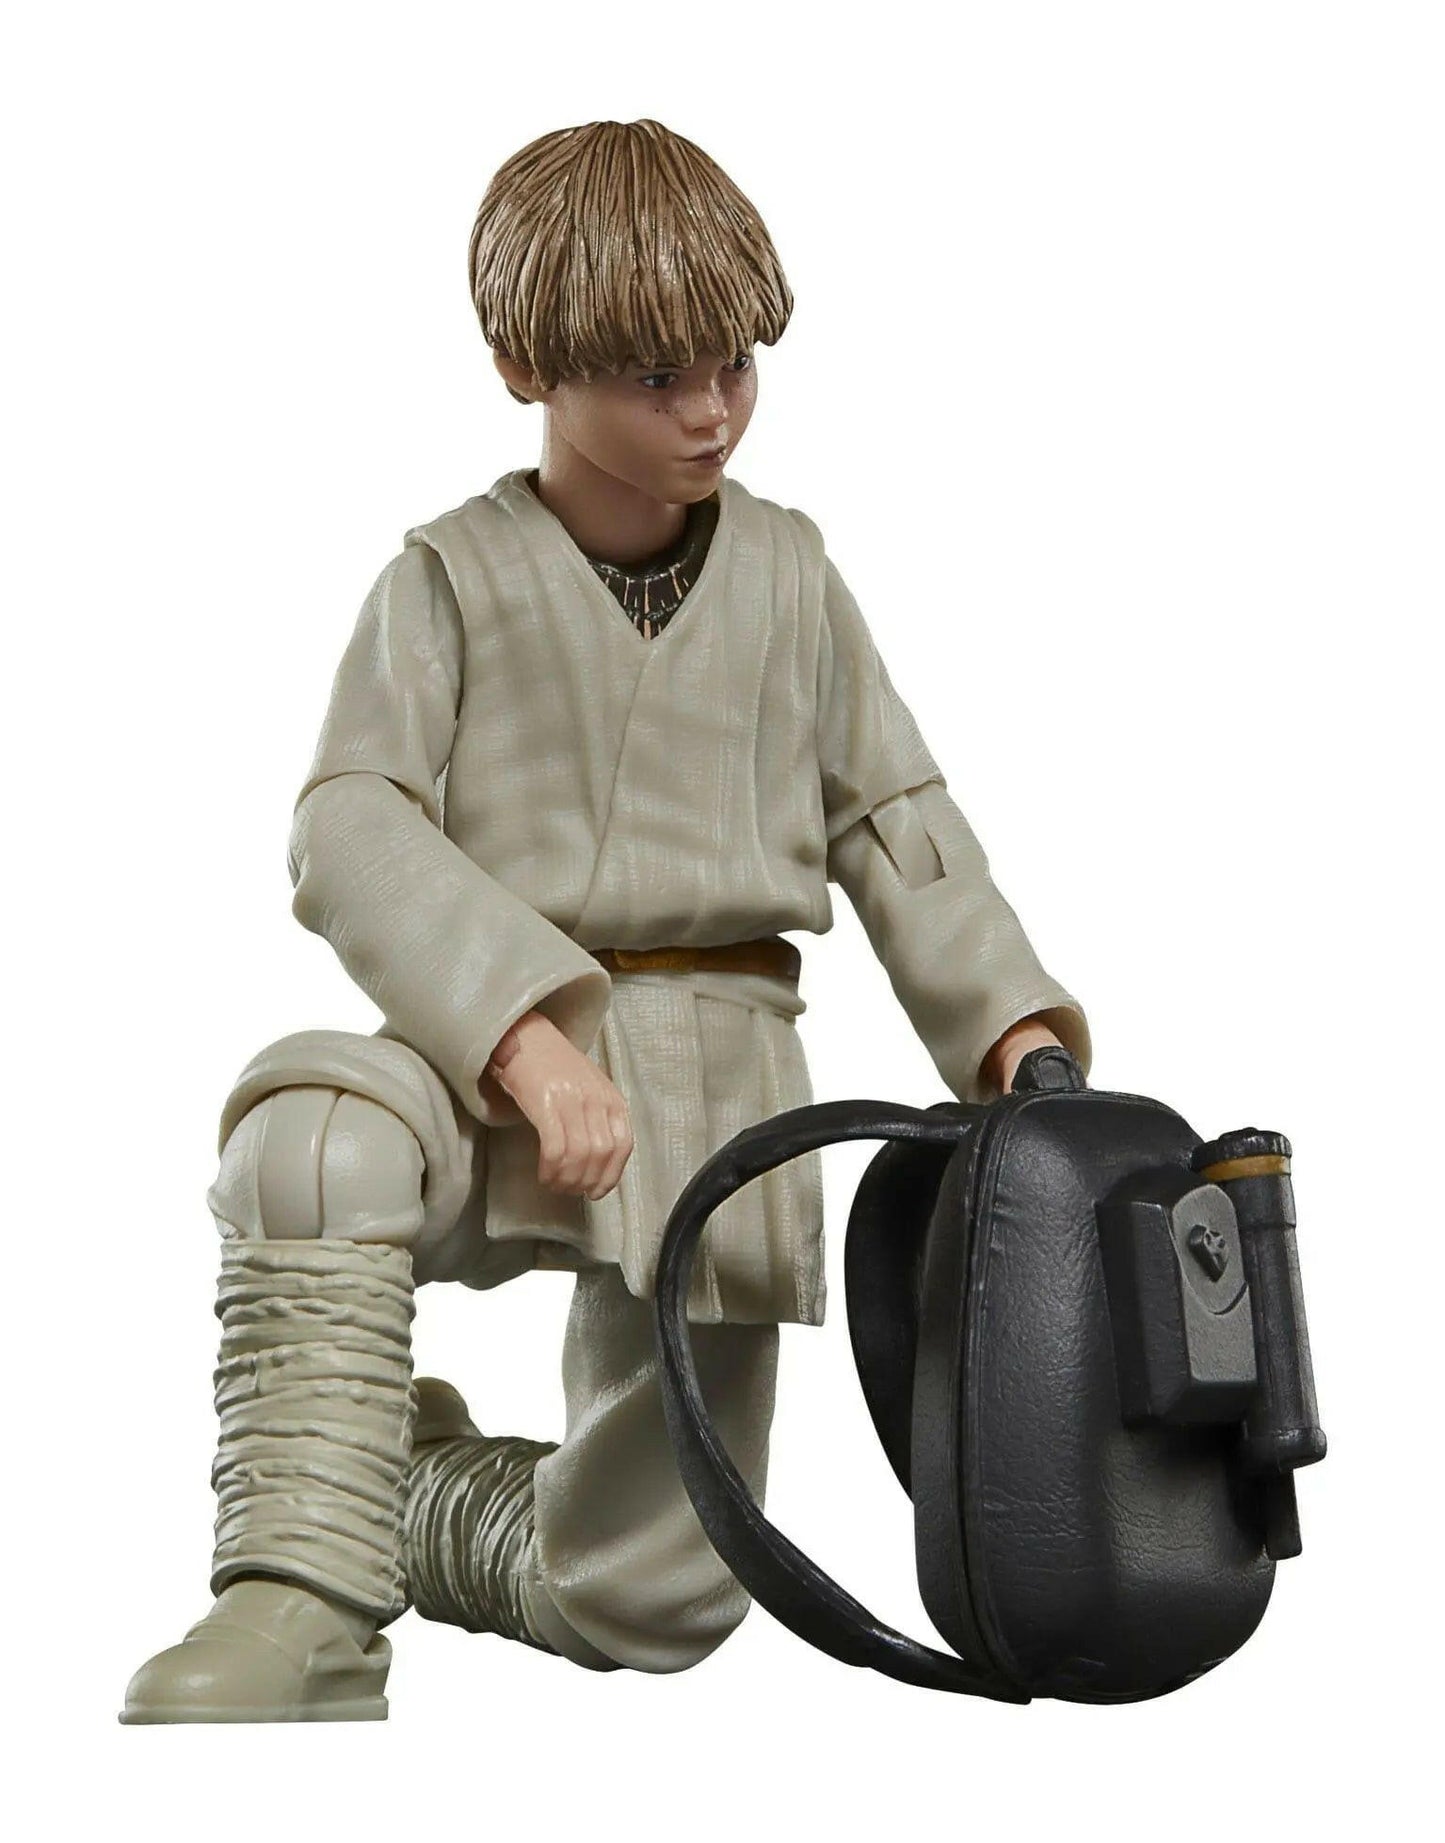 Pre-Order! Star Wars Black Series Episode I Actionfigur Anakin Skywalker 15cm - Toy-Storage